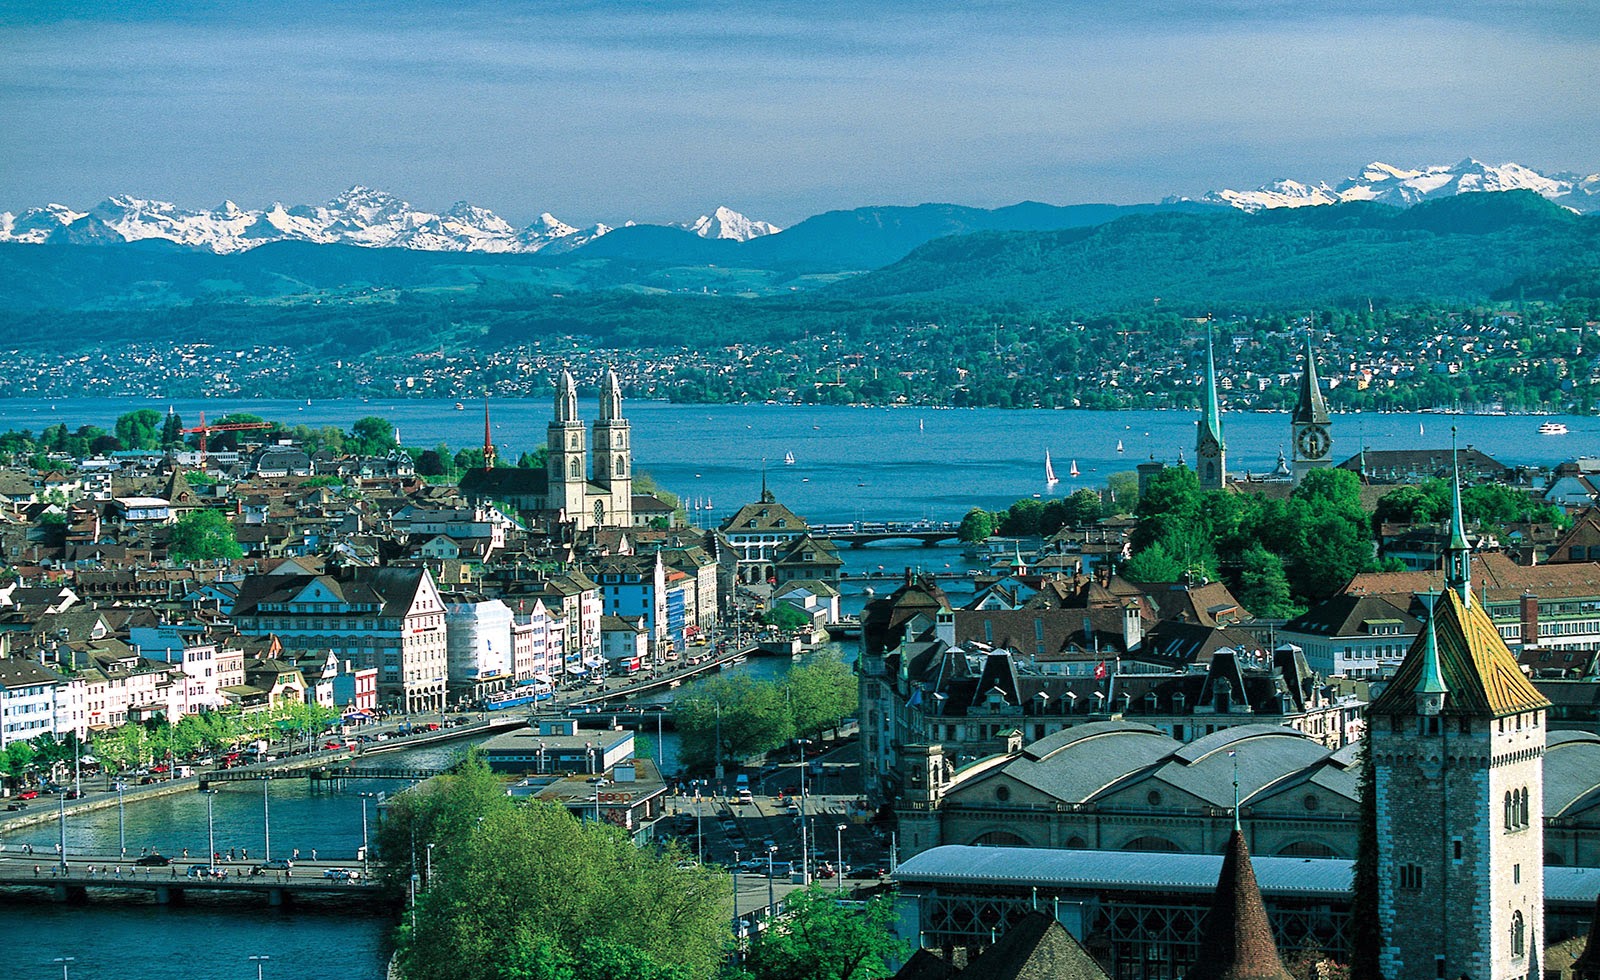 Tempat Wisata Menakjubkan Di Dunia Pariwisata Swiss